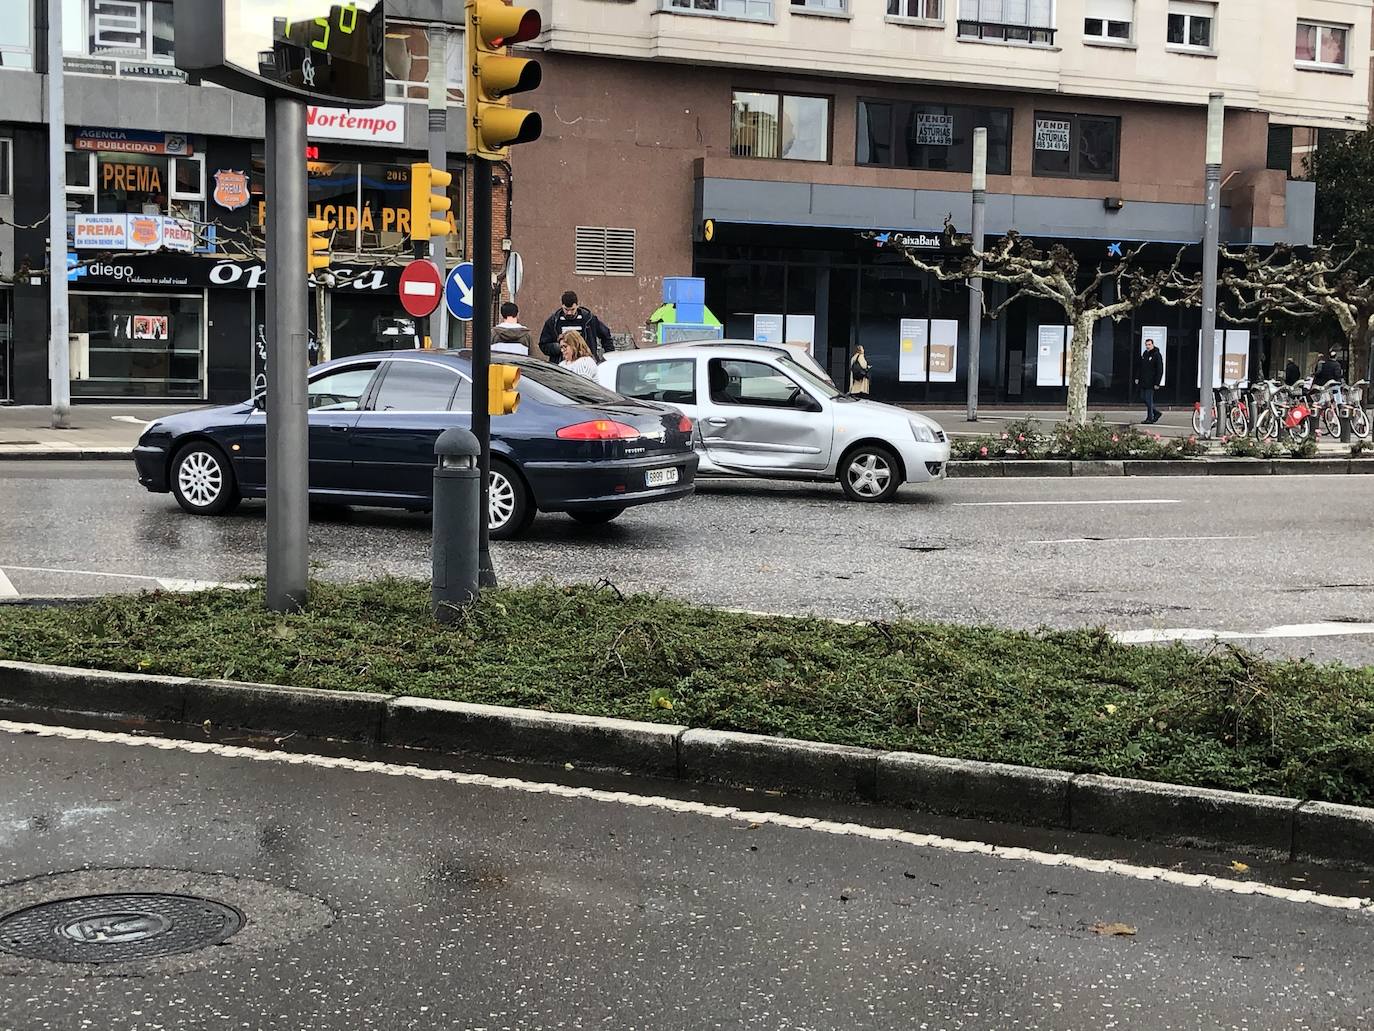 El choque entre dos vehículos dificulta el tráfico en el centro de Gijón